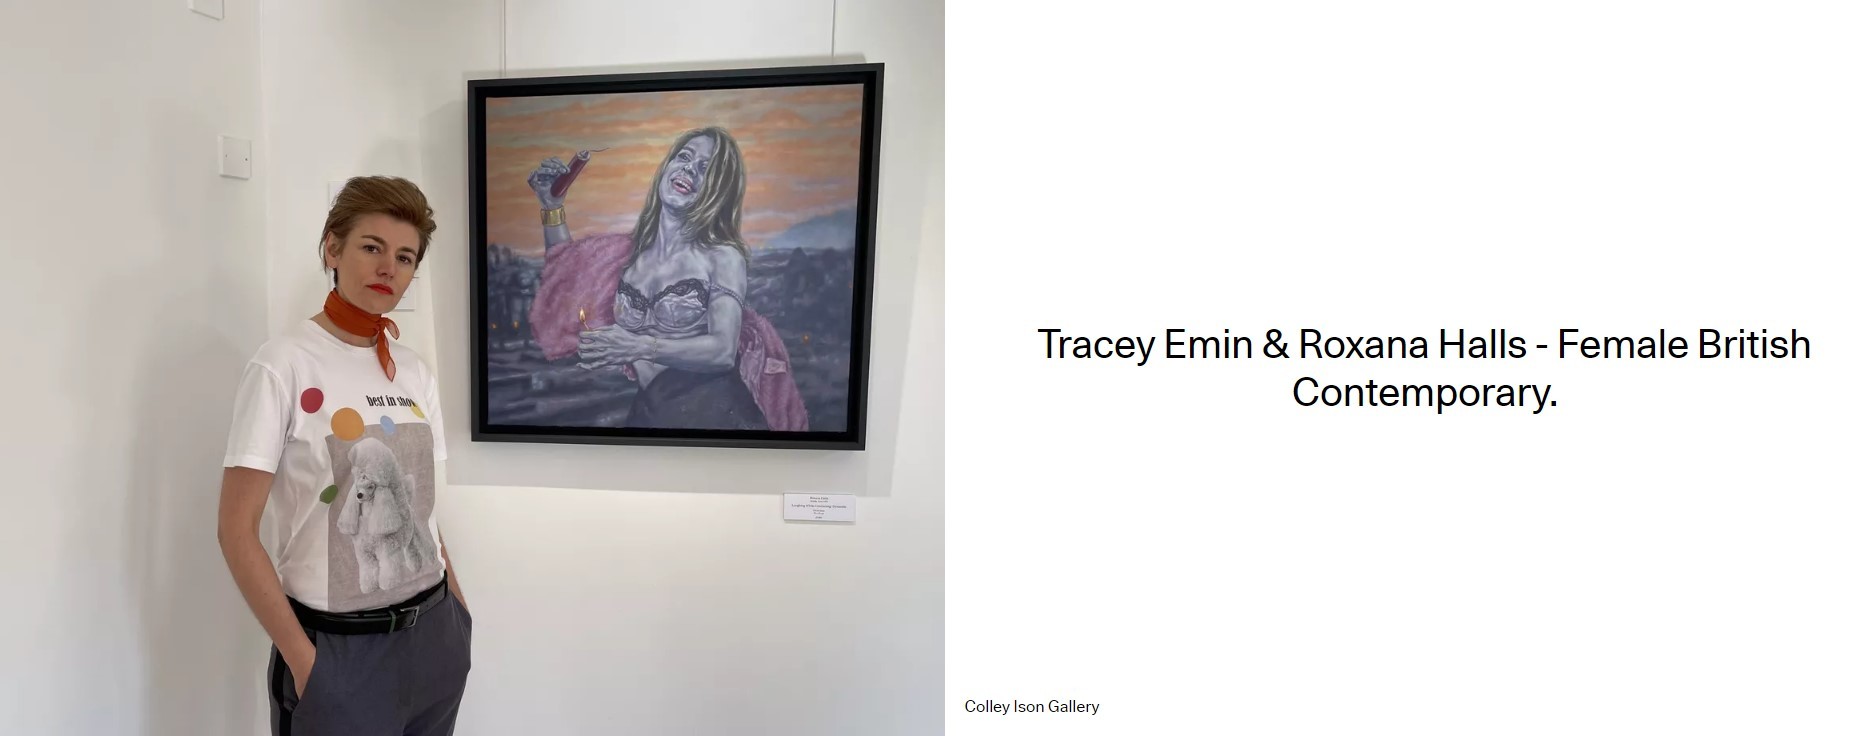 Tracey Emin & Roxana Halls